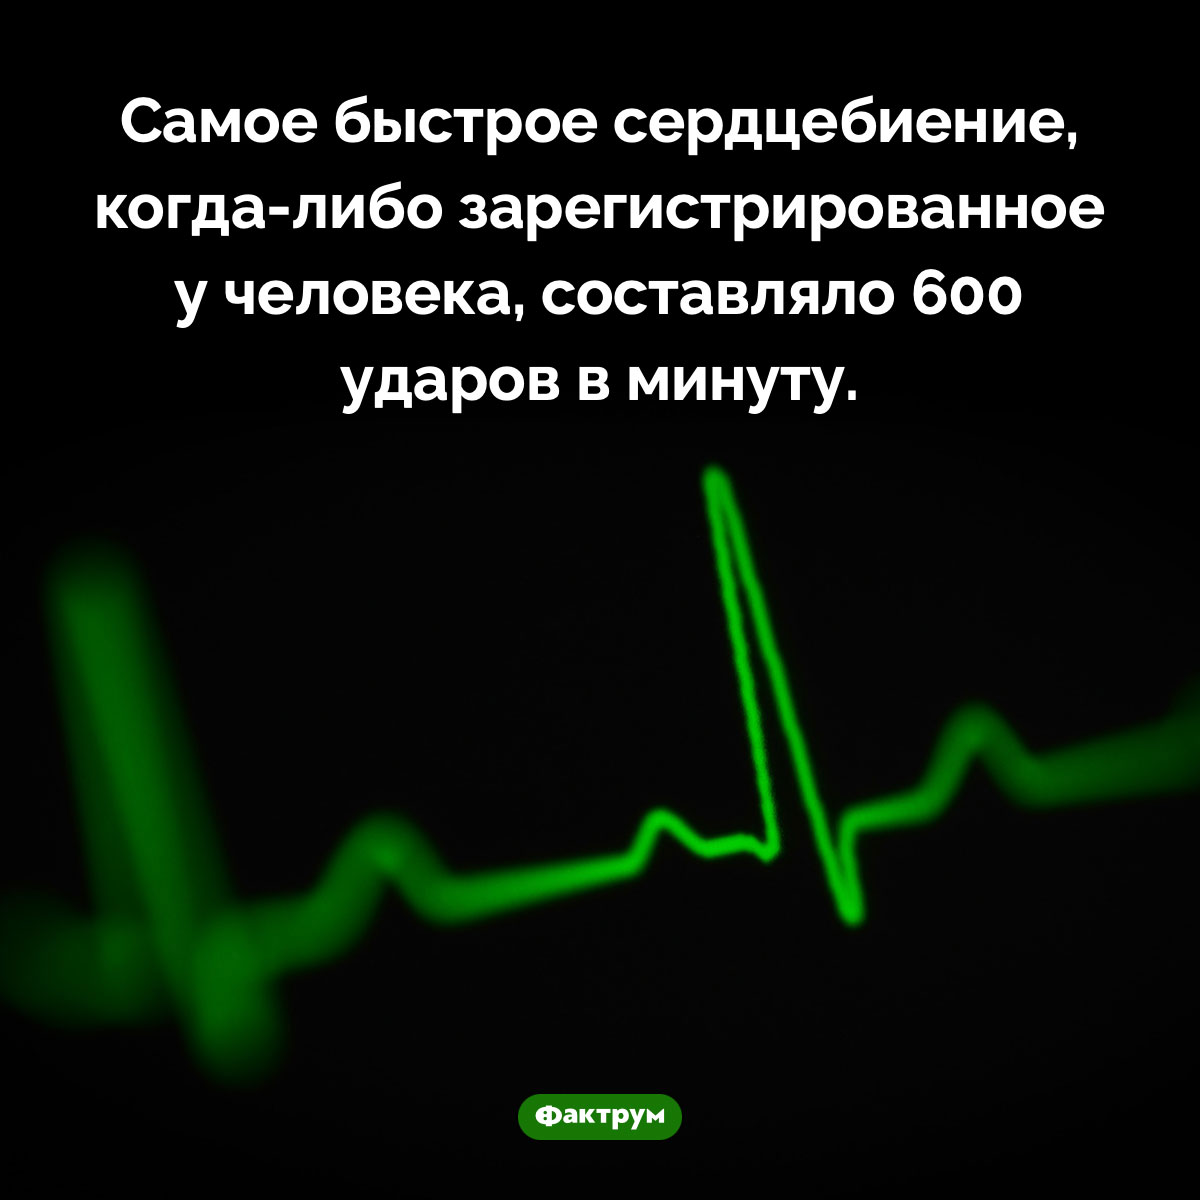 Самое быстрое сердцебиение. Самое быстрое сердцебиение, <nobr>когда-либо</nobr> зарегистрированное у человека, составляло 600 ударов в минуту.